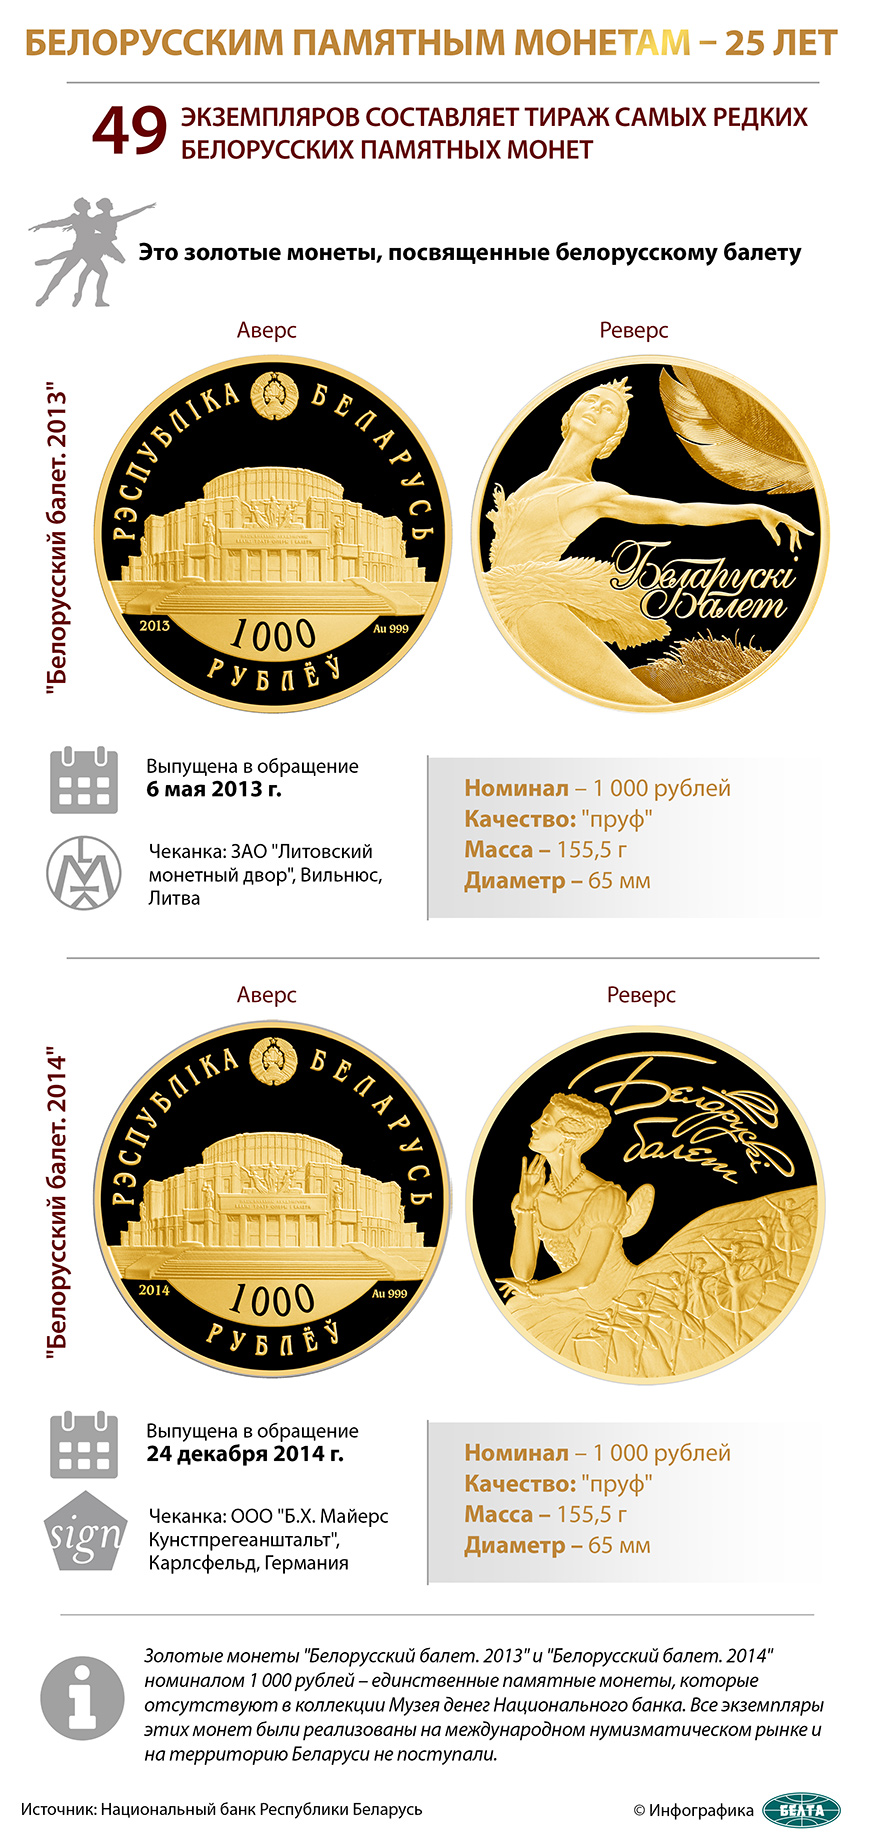 25 фактов о белорусских памятных монетах